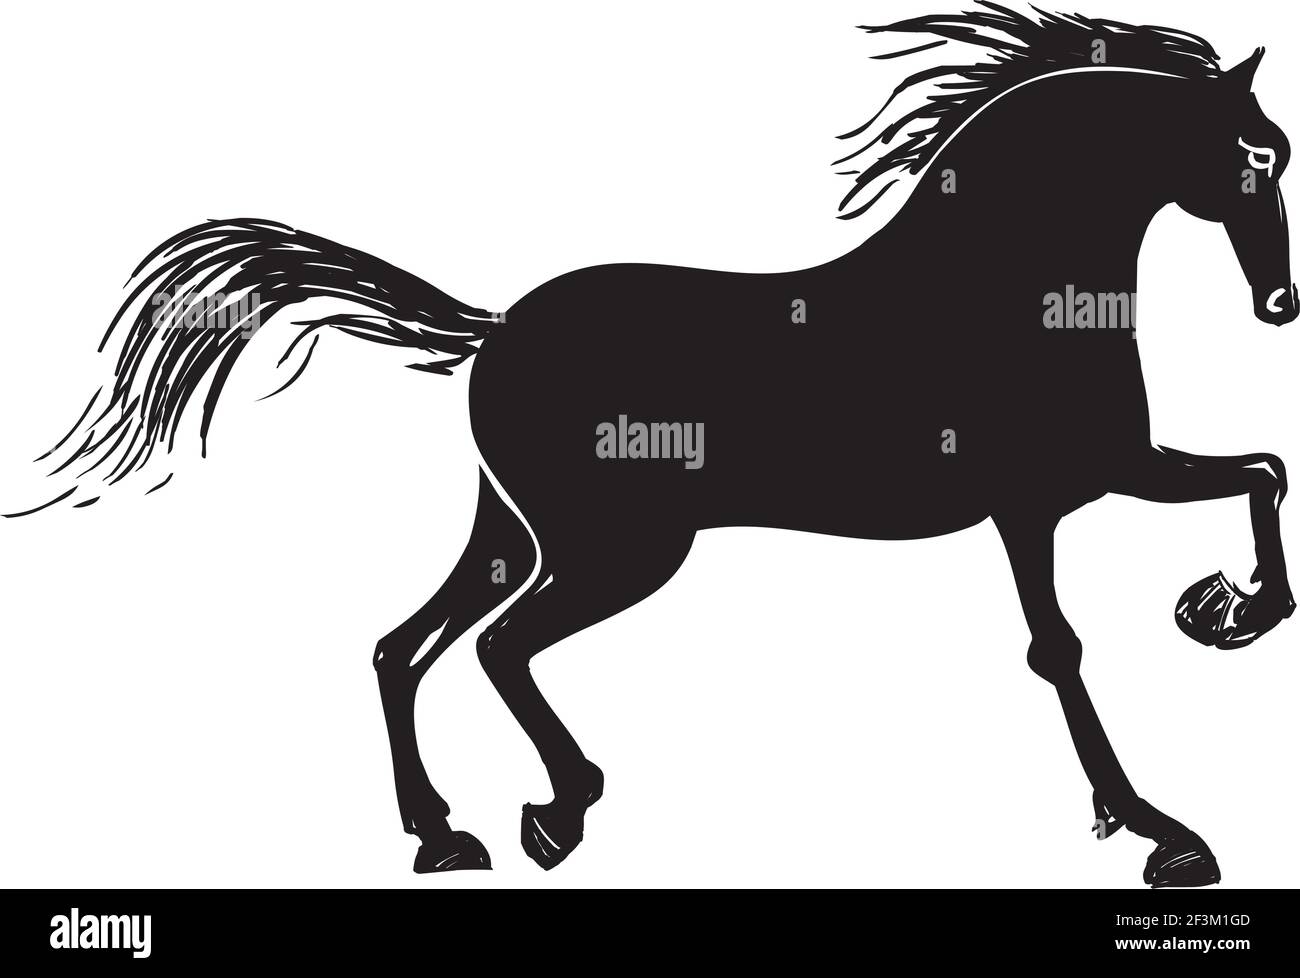 Running horse illustration Stock Vector